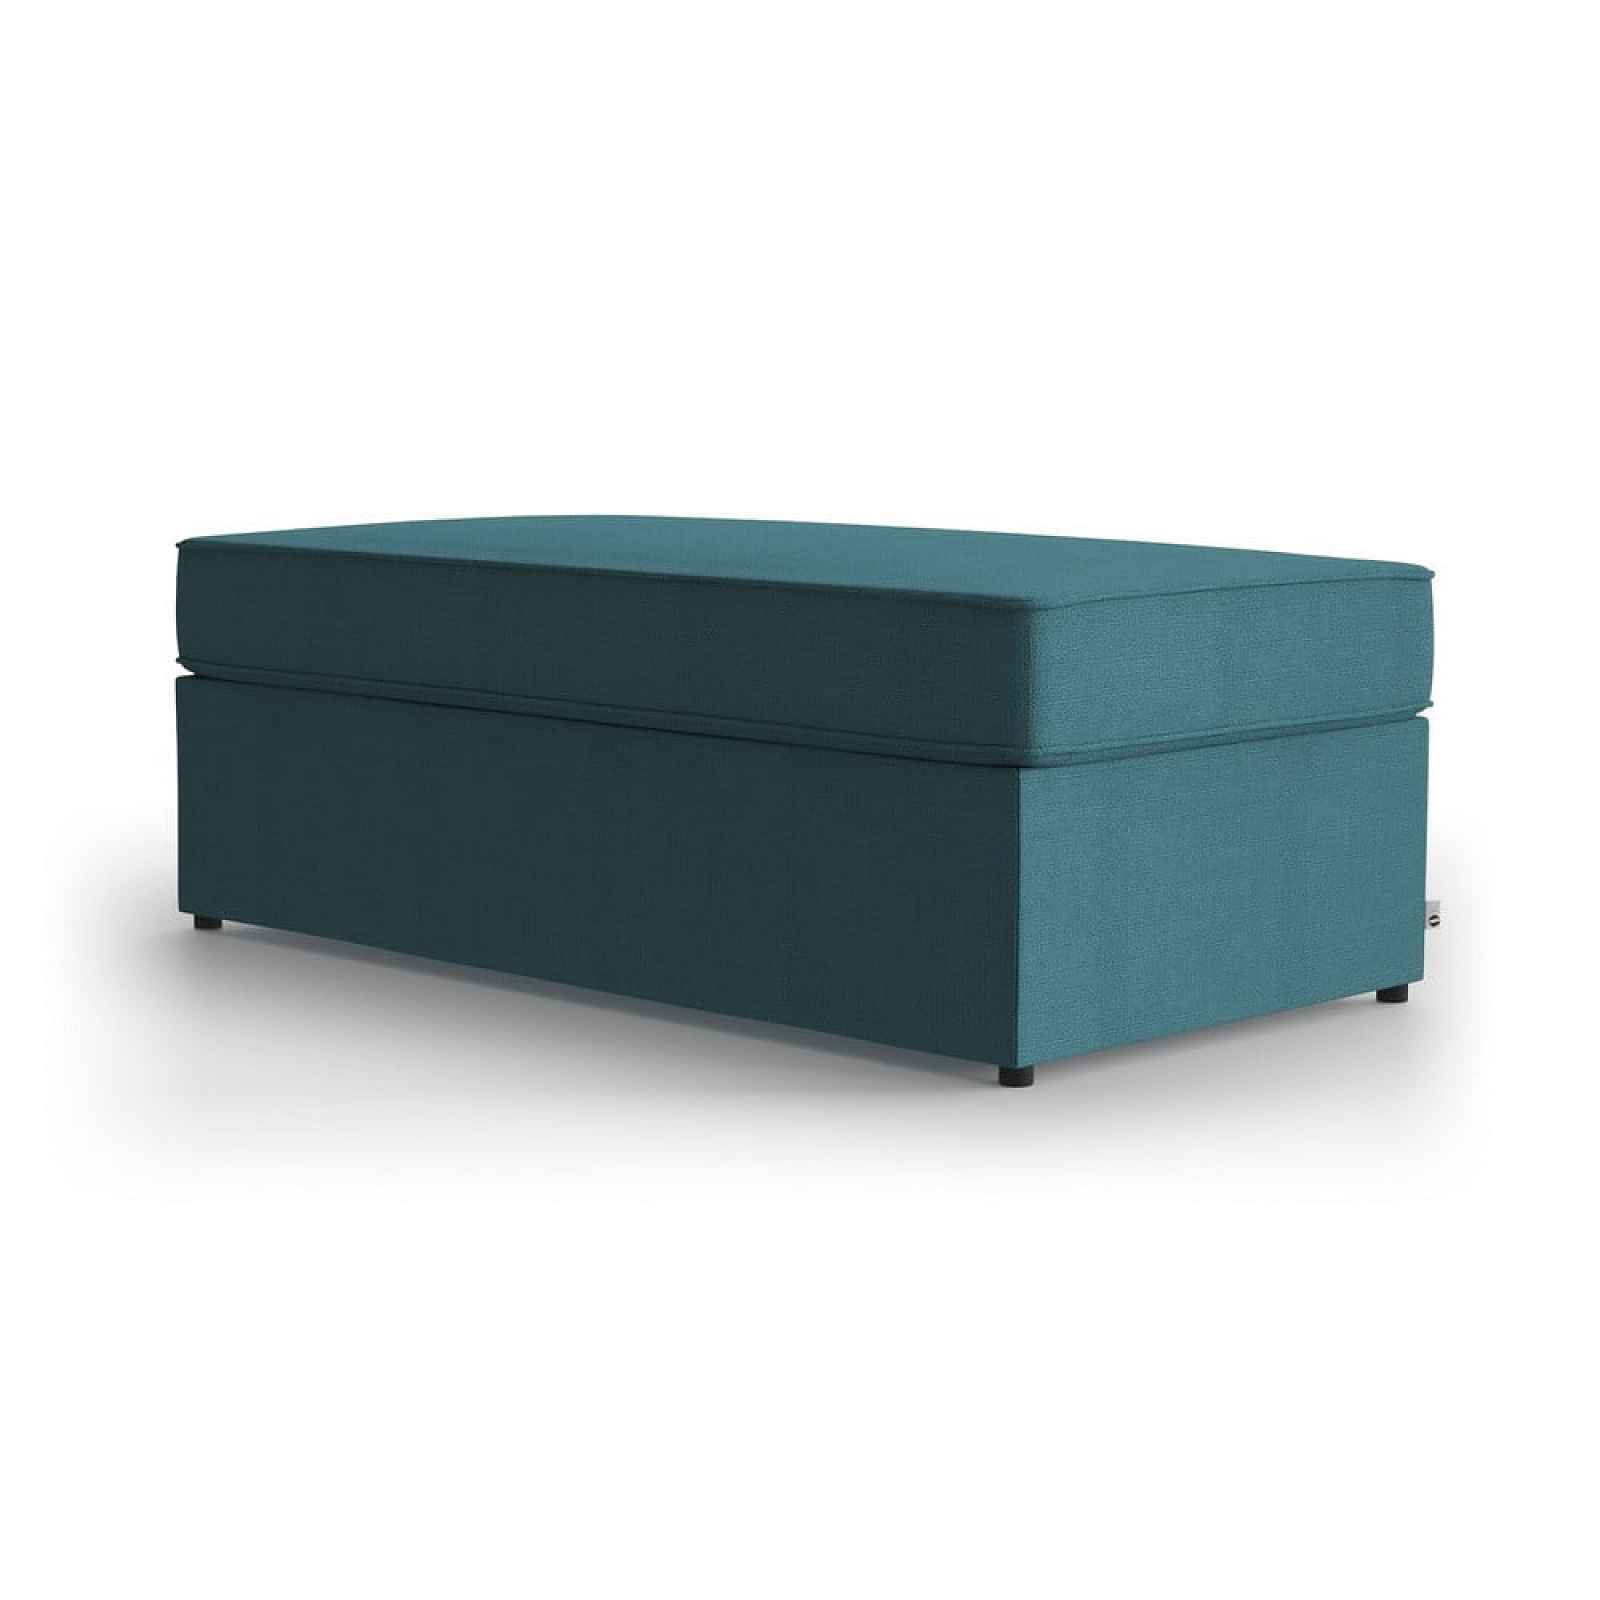 Tyrkysová polstrovaná rozkládací lavice, rozměry rozloženého lůžka: 120x190 cm